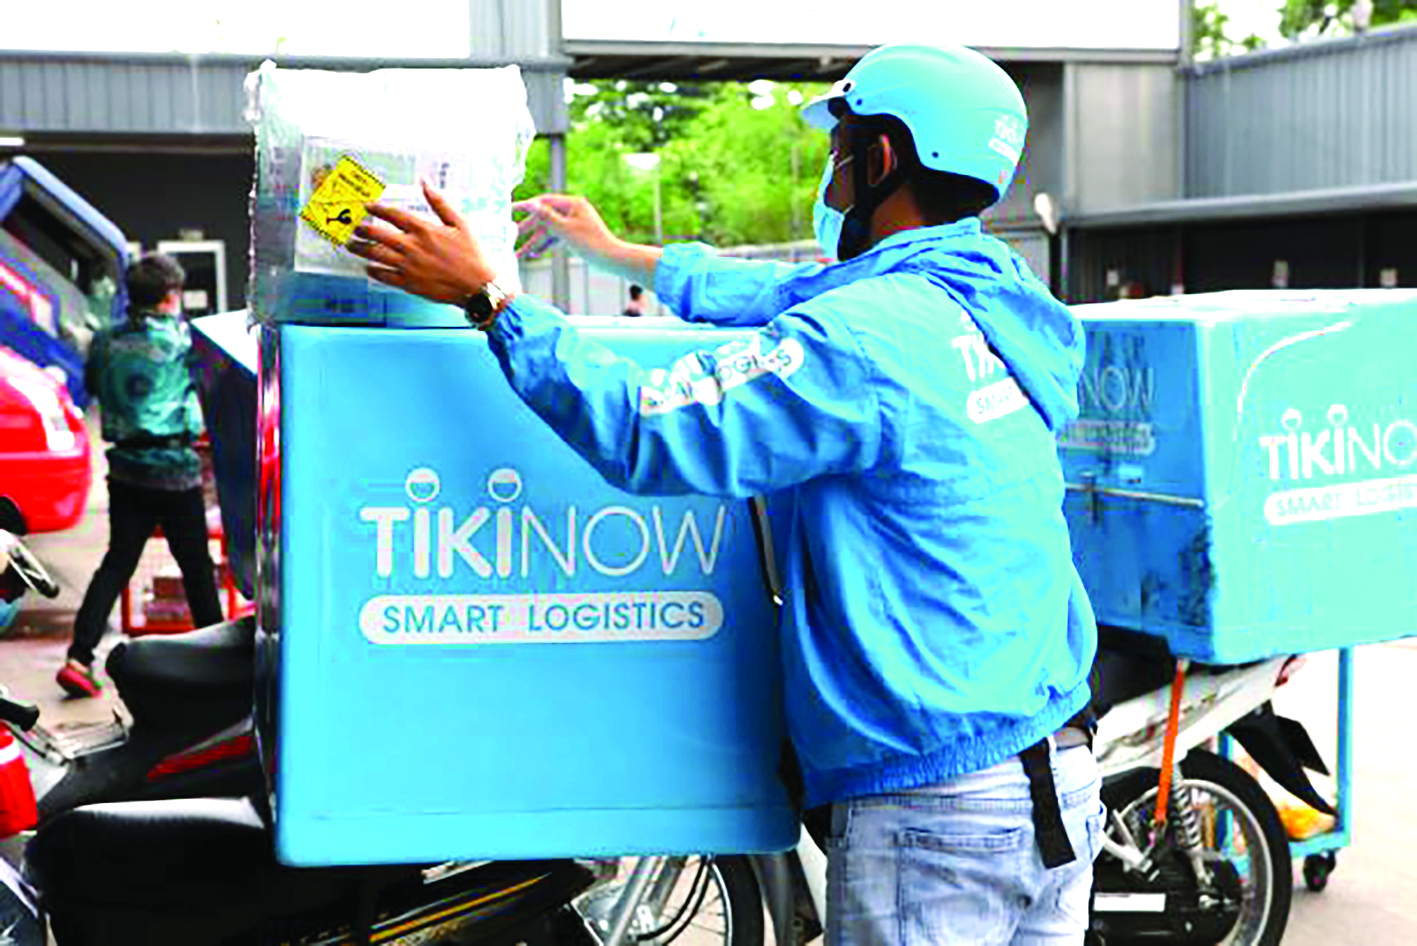  Tiki Now đang phát triển mạnh hệ thống Tiki Ngon giao thực phẩm nhanh. 